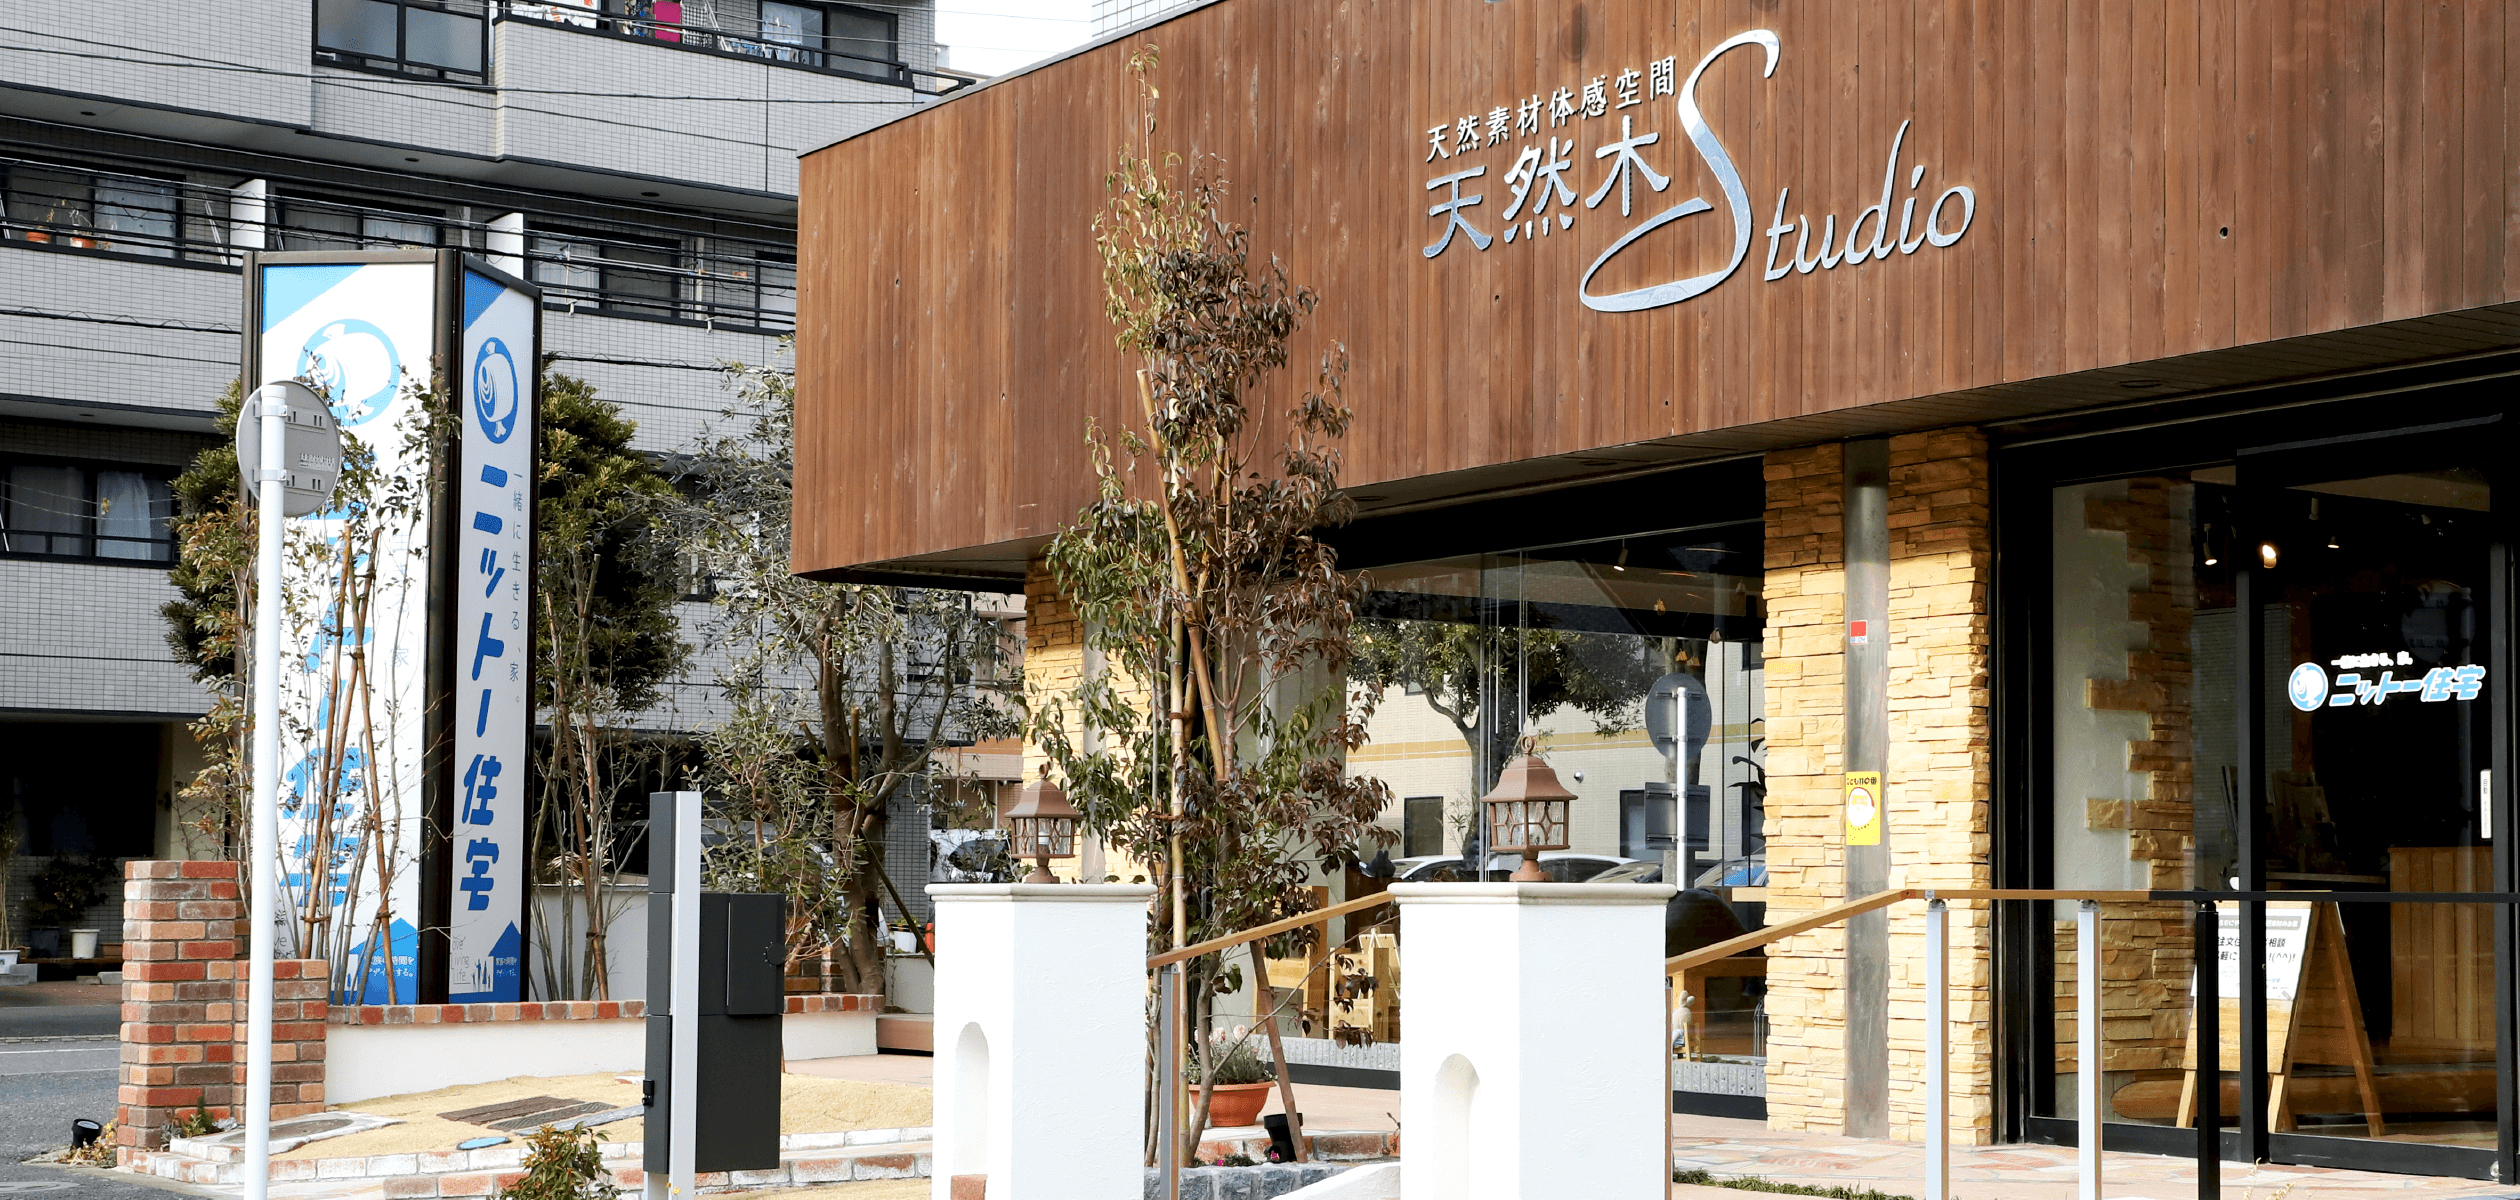 江戸川区で自然素材の注文住宅を建てるニットー住宅本社建物